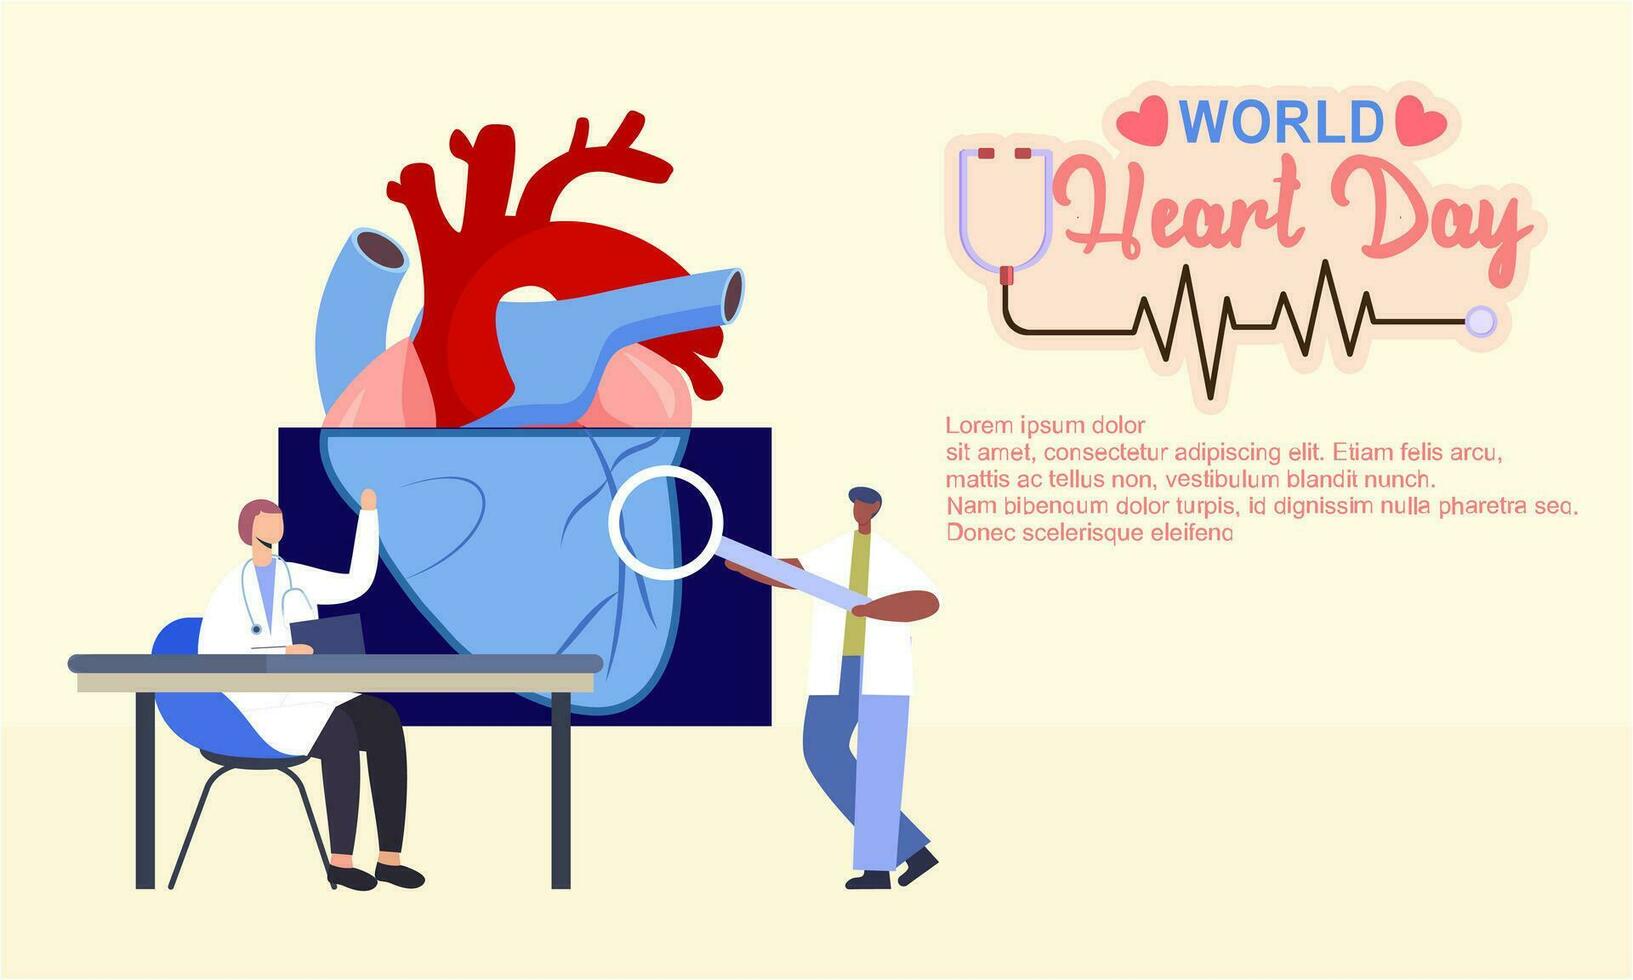 Welt Herz Tag Poster Kampagne im Karikatur Charakter Behandlung und Gesundheit Pflege Bewusstsein und eben Design beim 29 September vektor